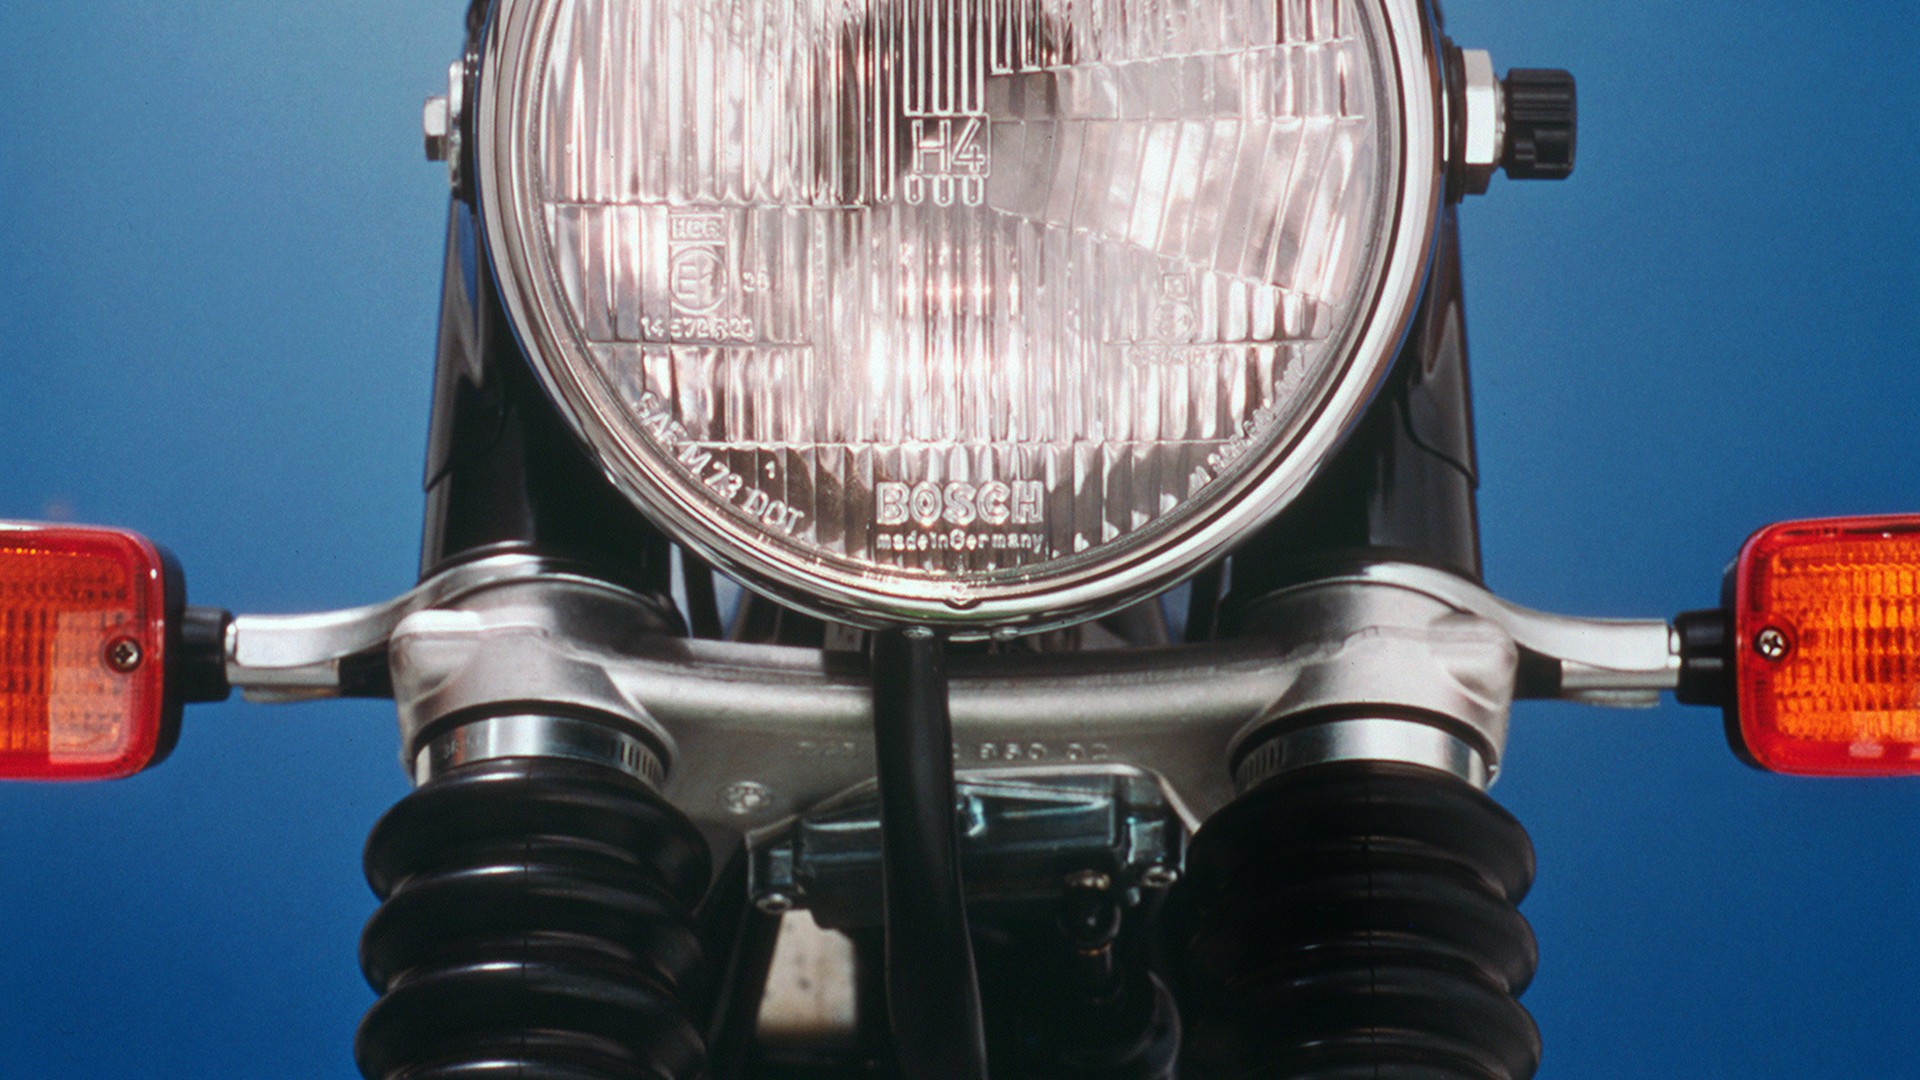 1977 год – первая система предупреждающих сигналов для мотоциклов